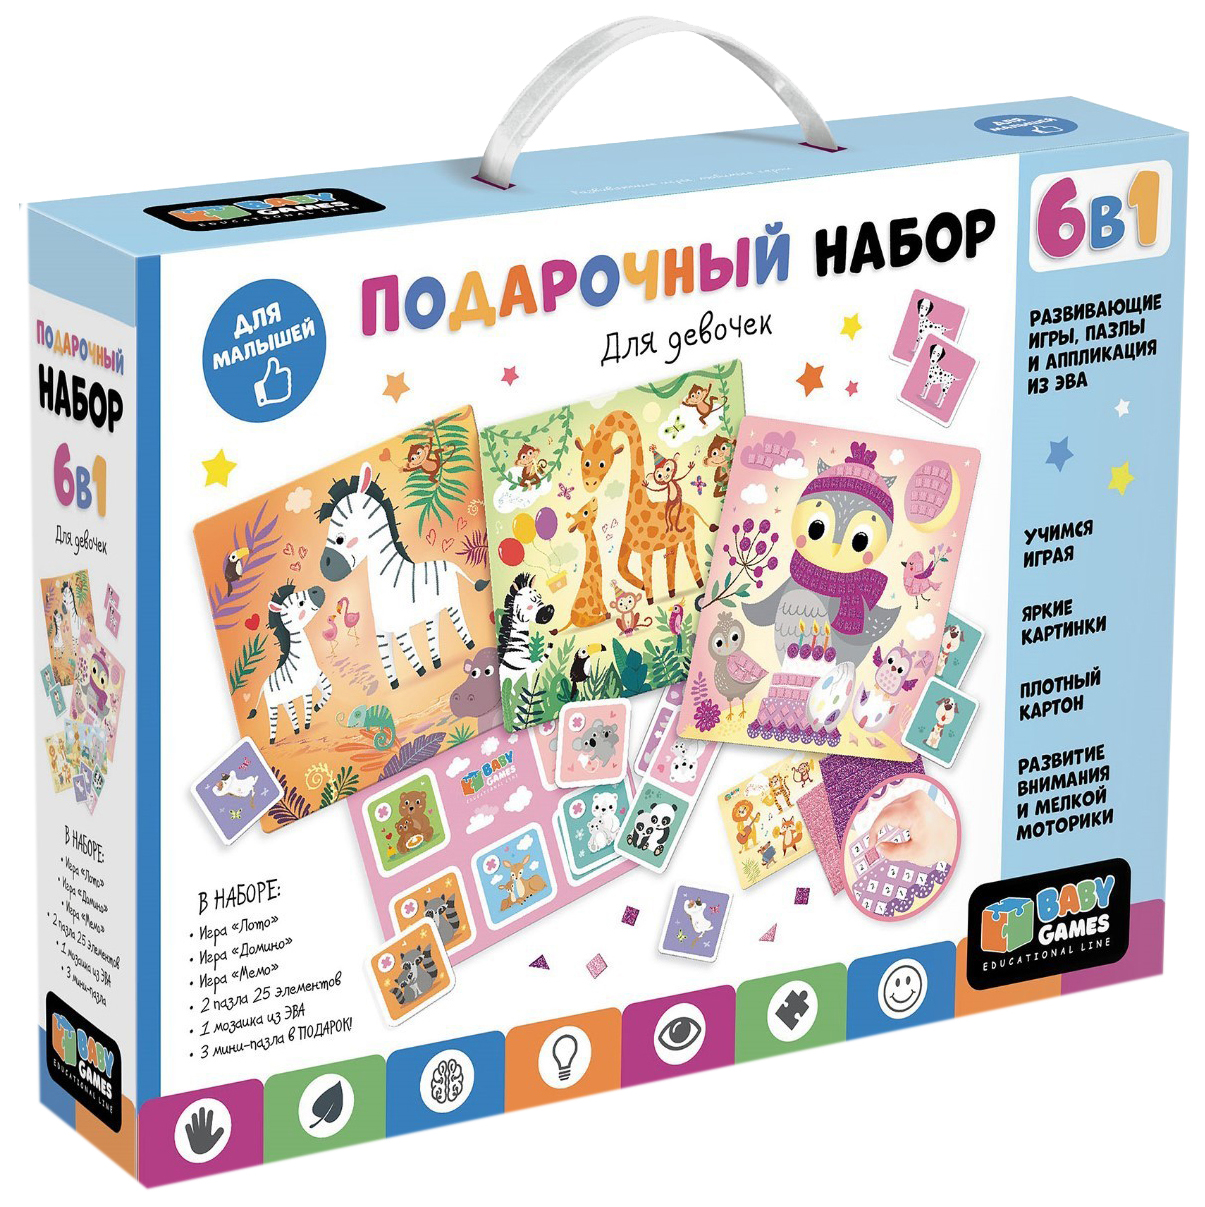 фото Игровой набор подарочный для девочек 6в1 лото, домино, мемо, пазлы мозаика эва, baby games origami